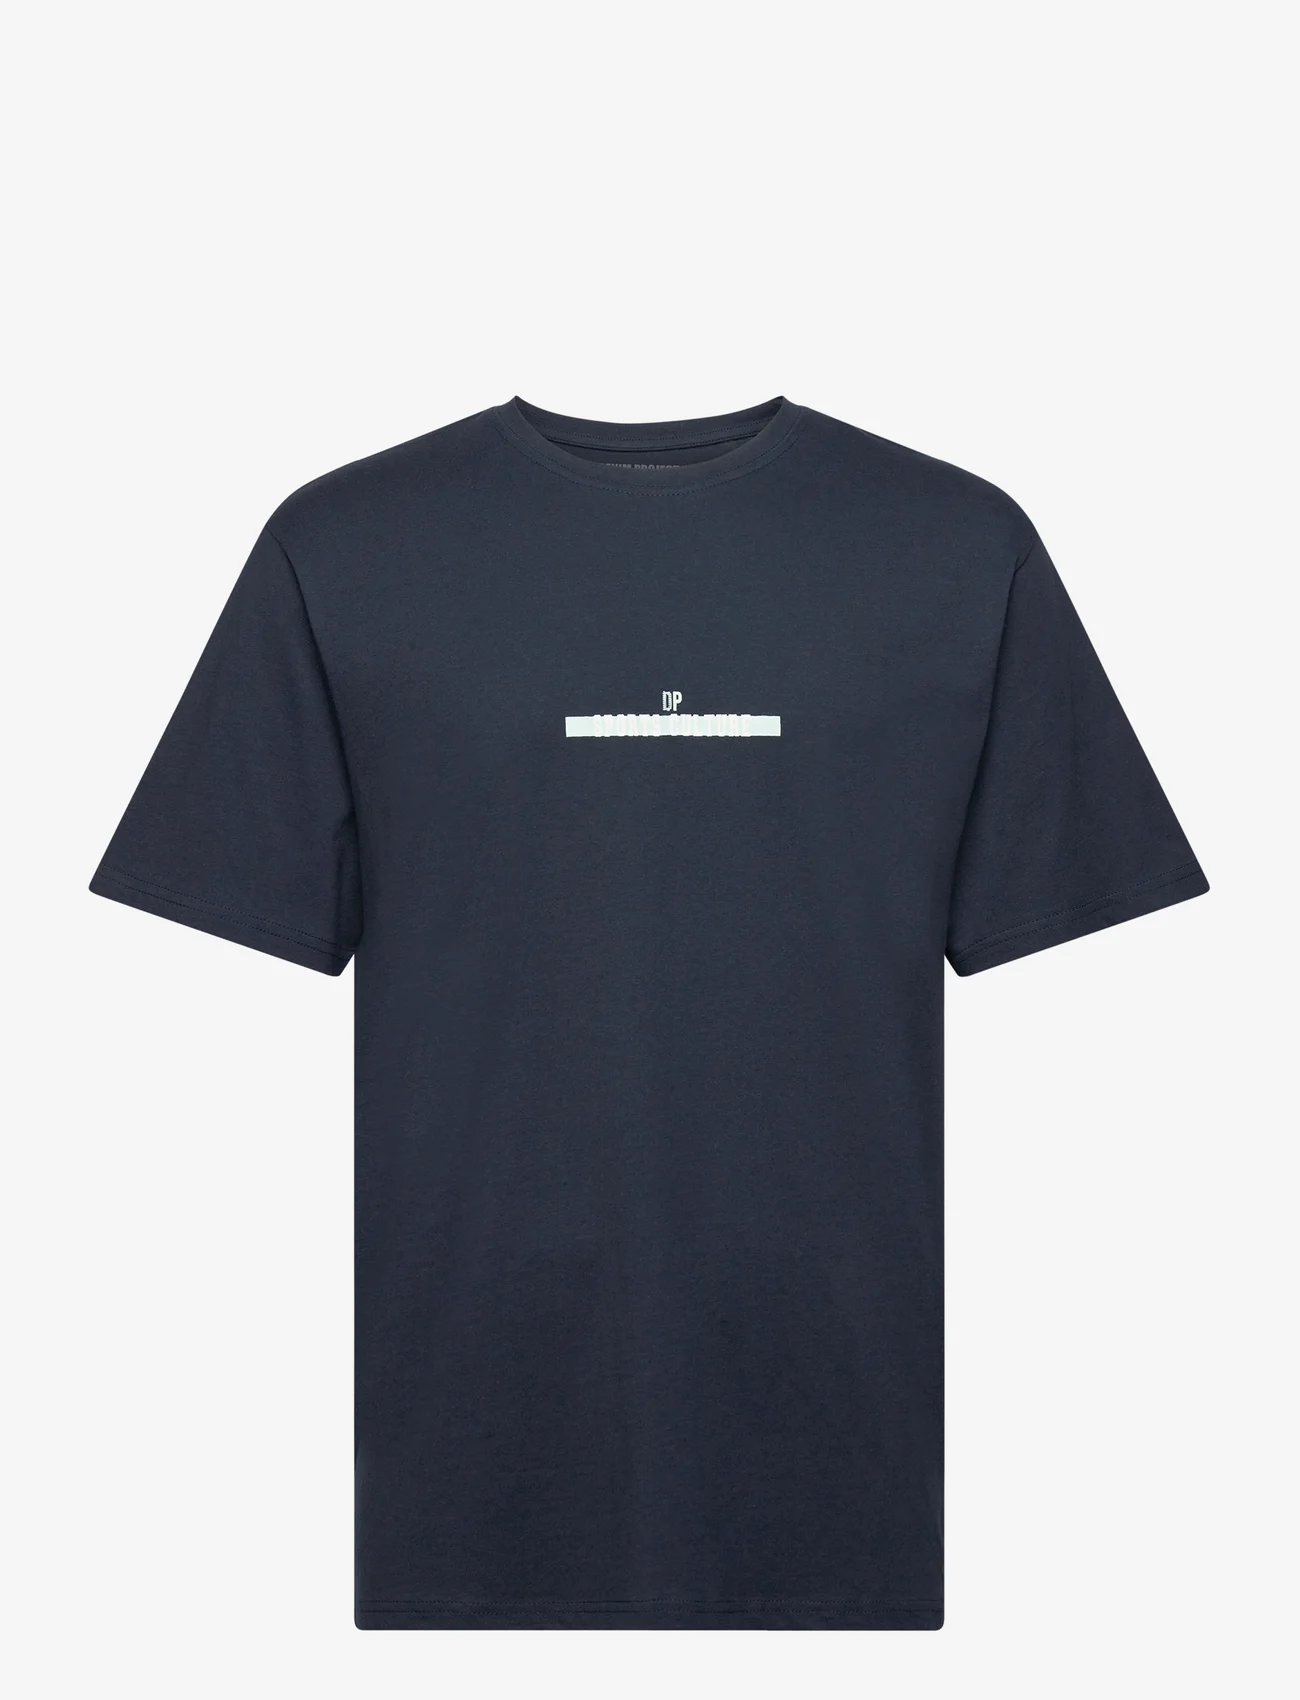 Denim project - DPWorld Championship T-shirt - lowest prices - carbon blue - 0